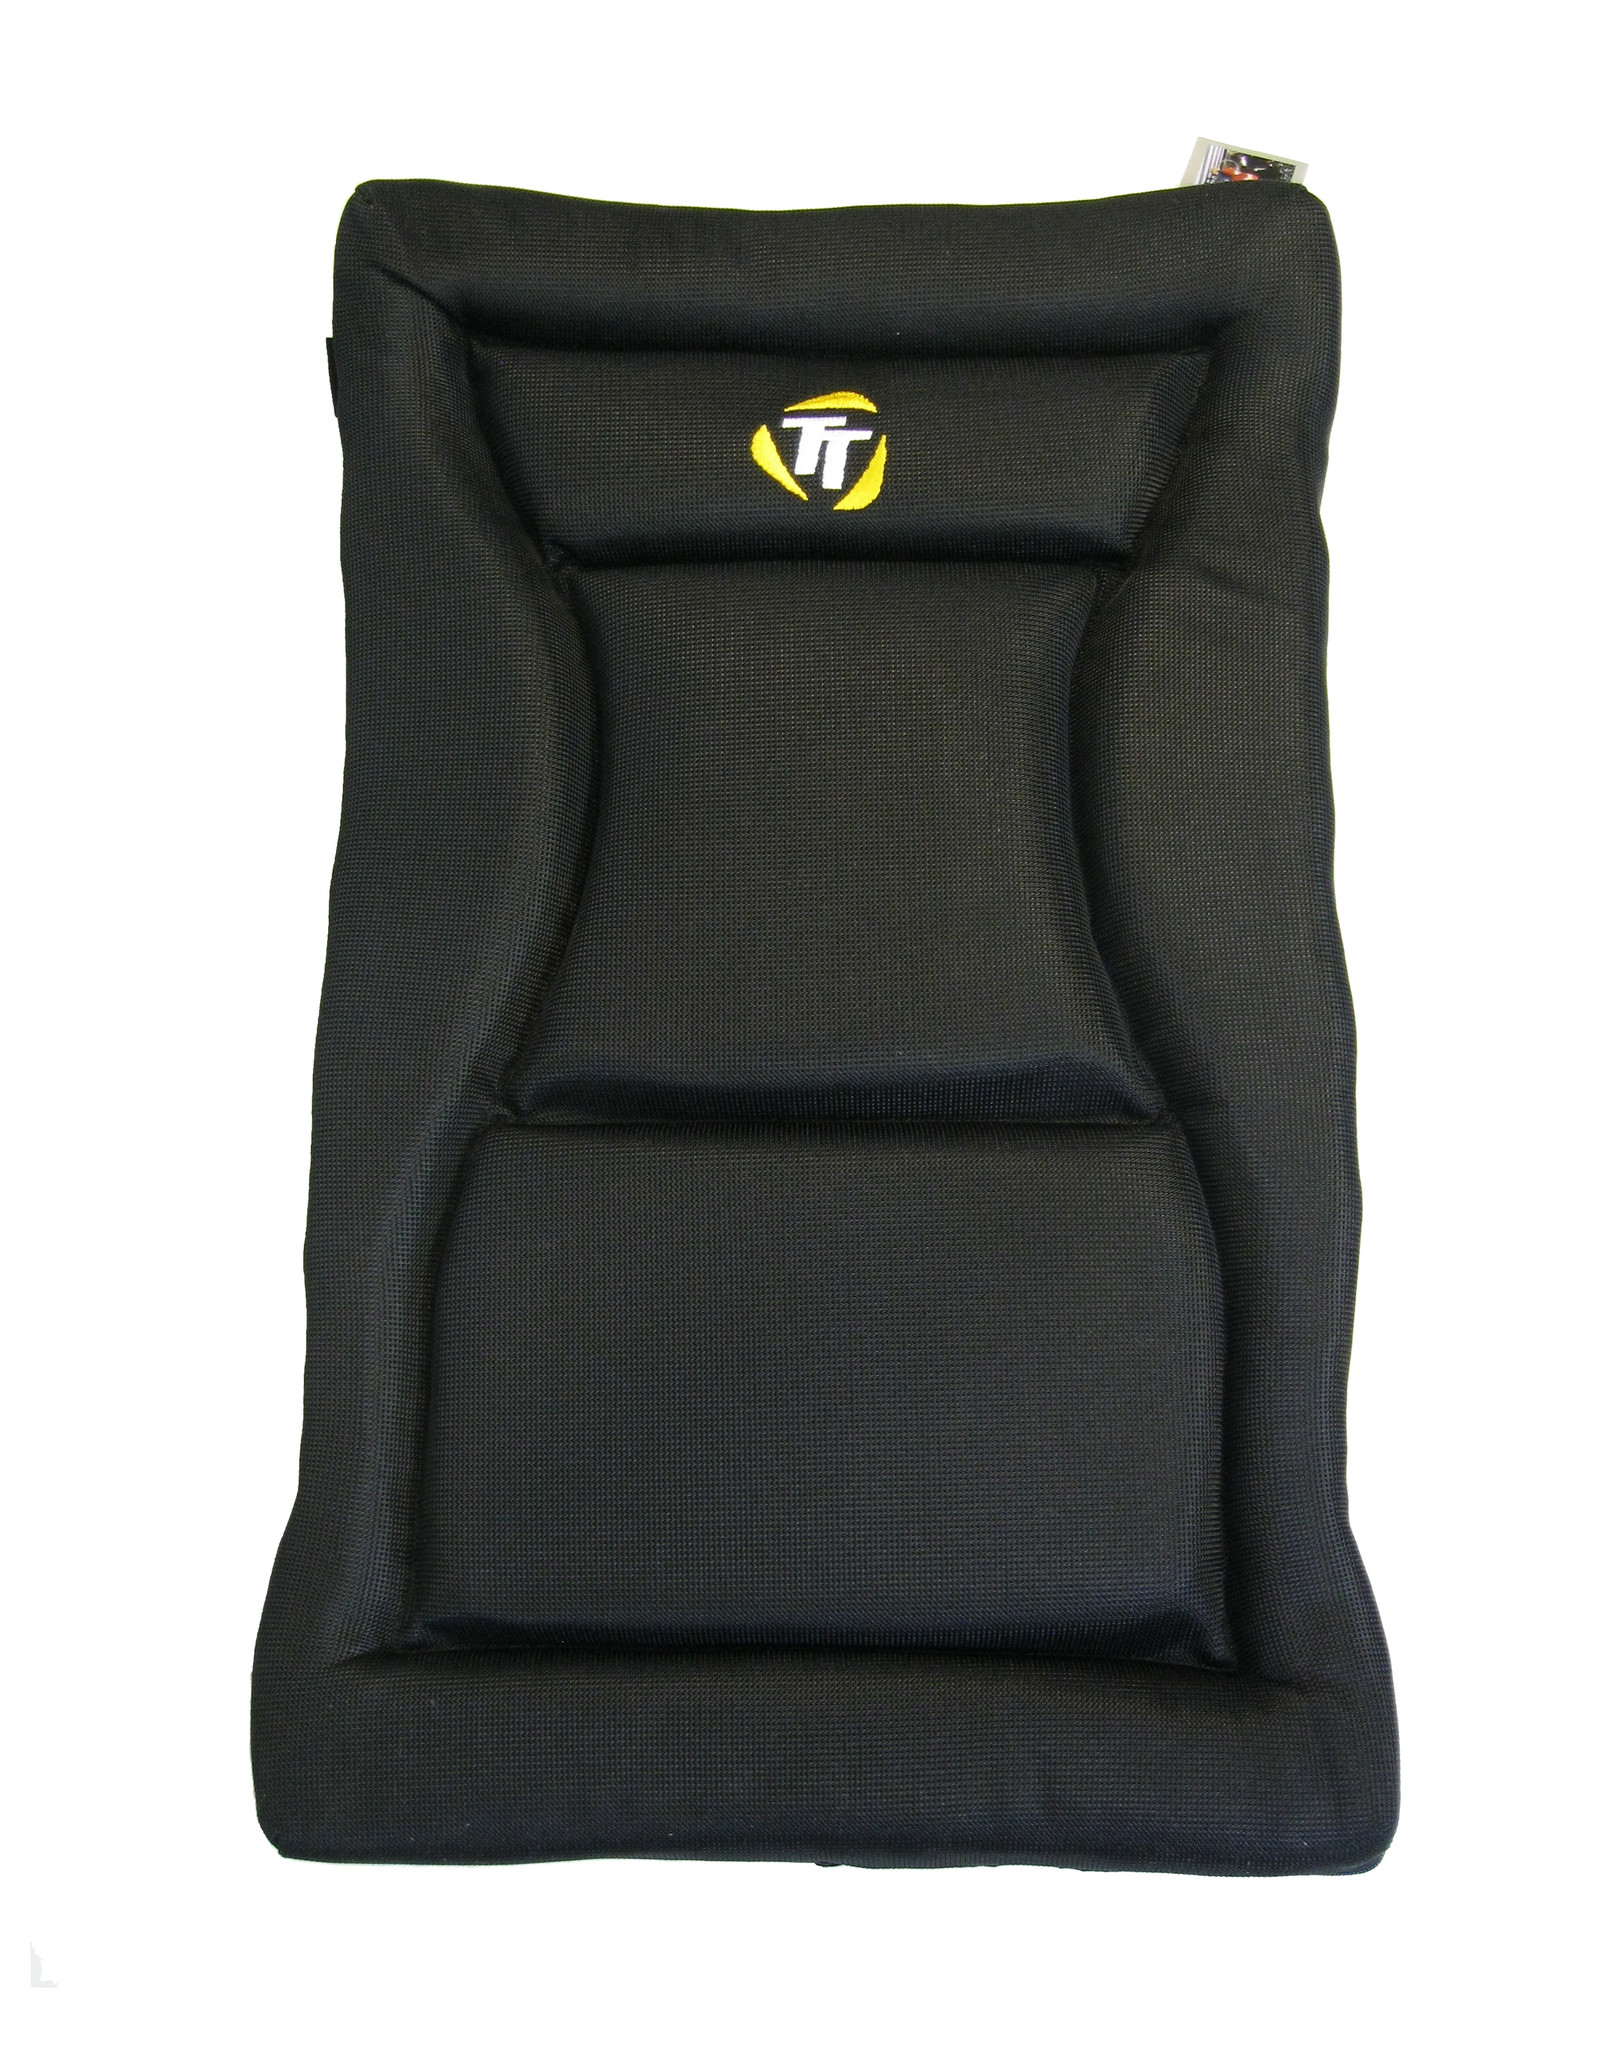 Terratrike Terratrike Seat Pad - Extended Width Size